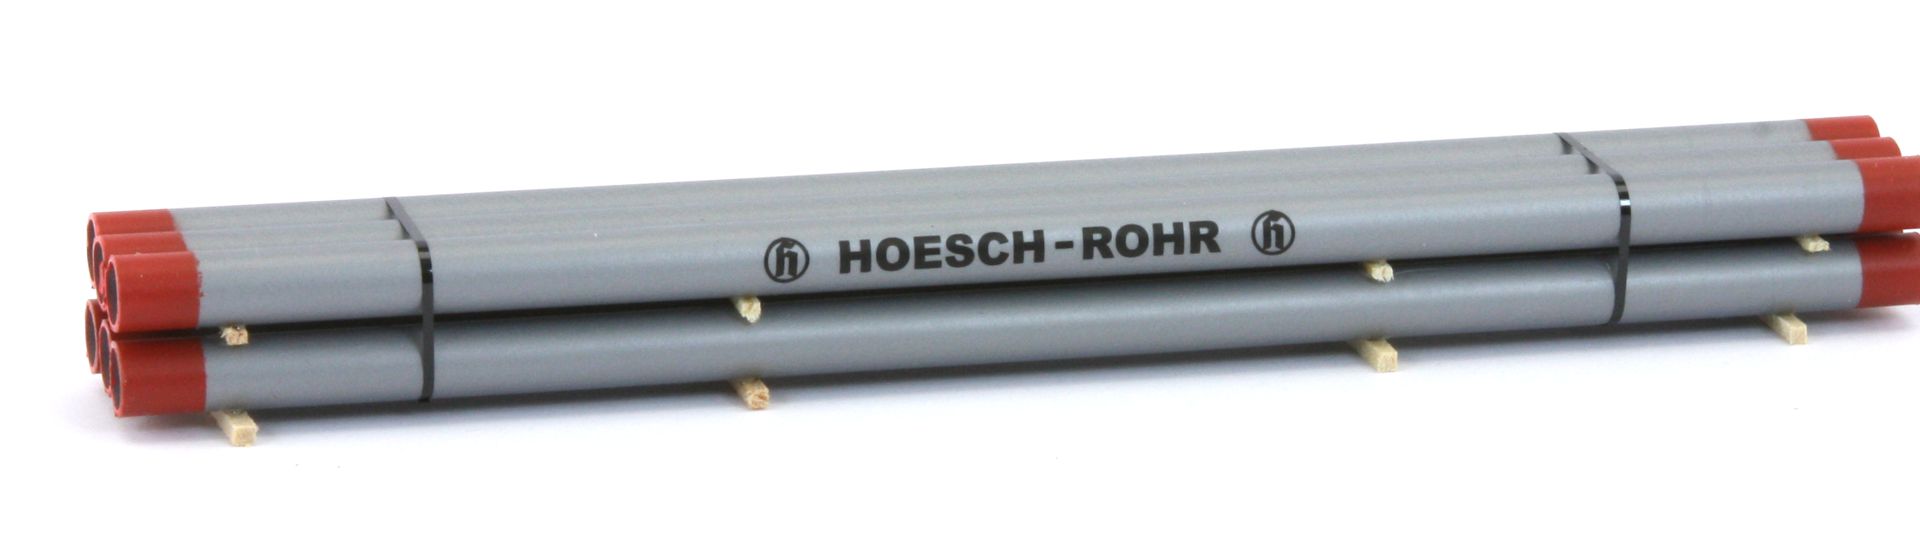 Loewe 2208 - Ladegut, Eisenröhren 'HOESCH-ROHR'